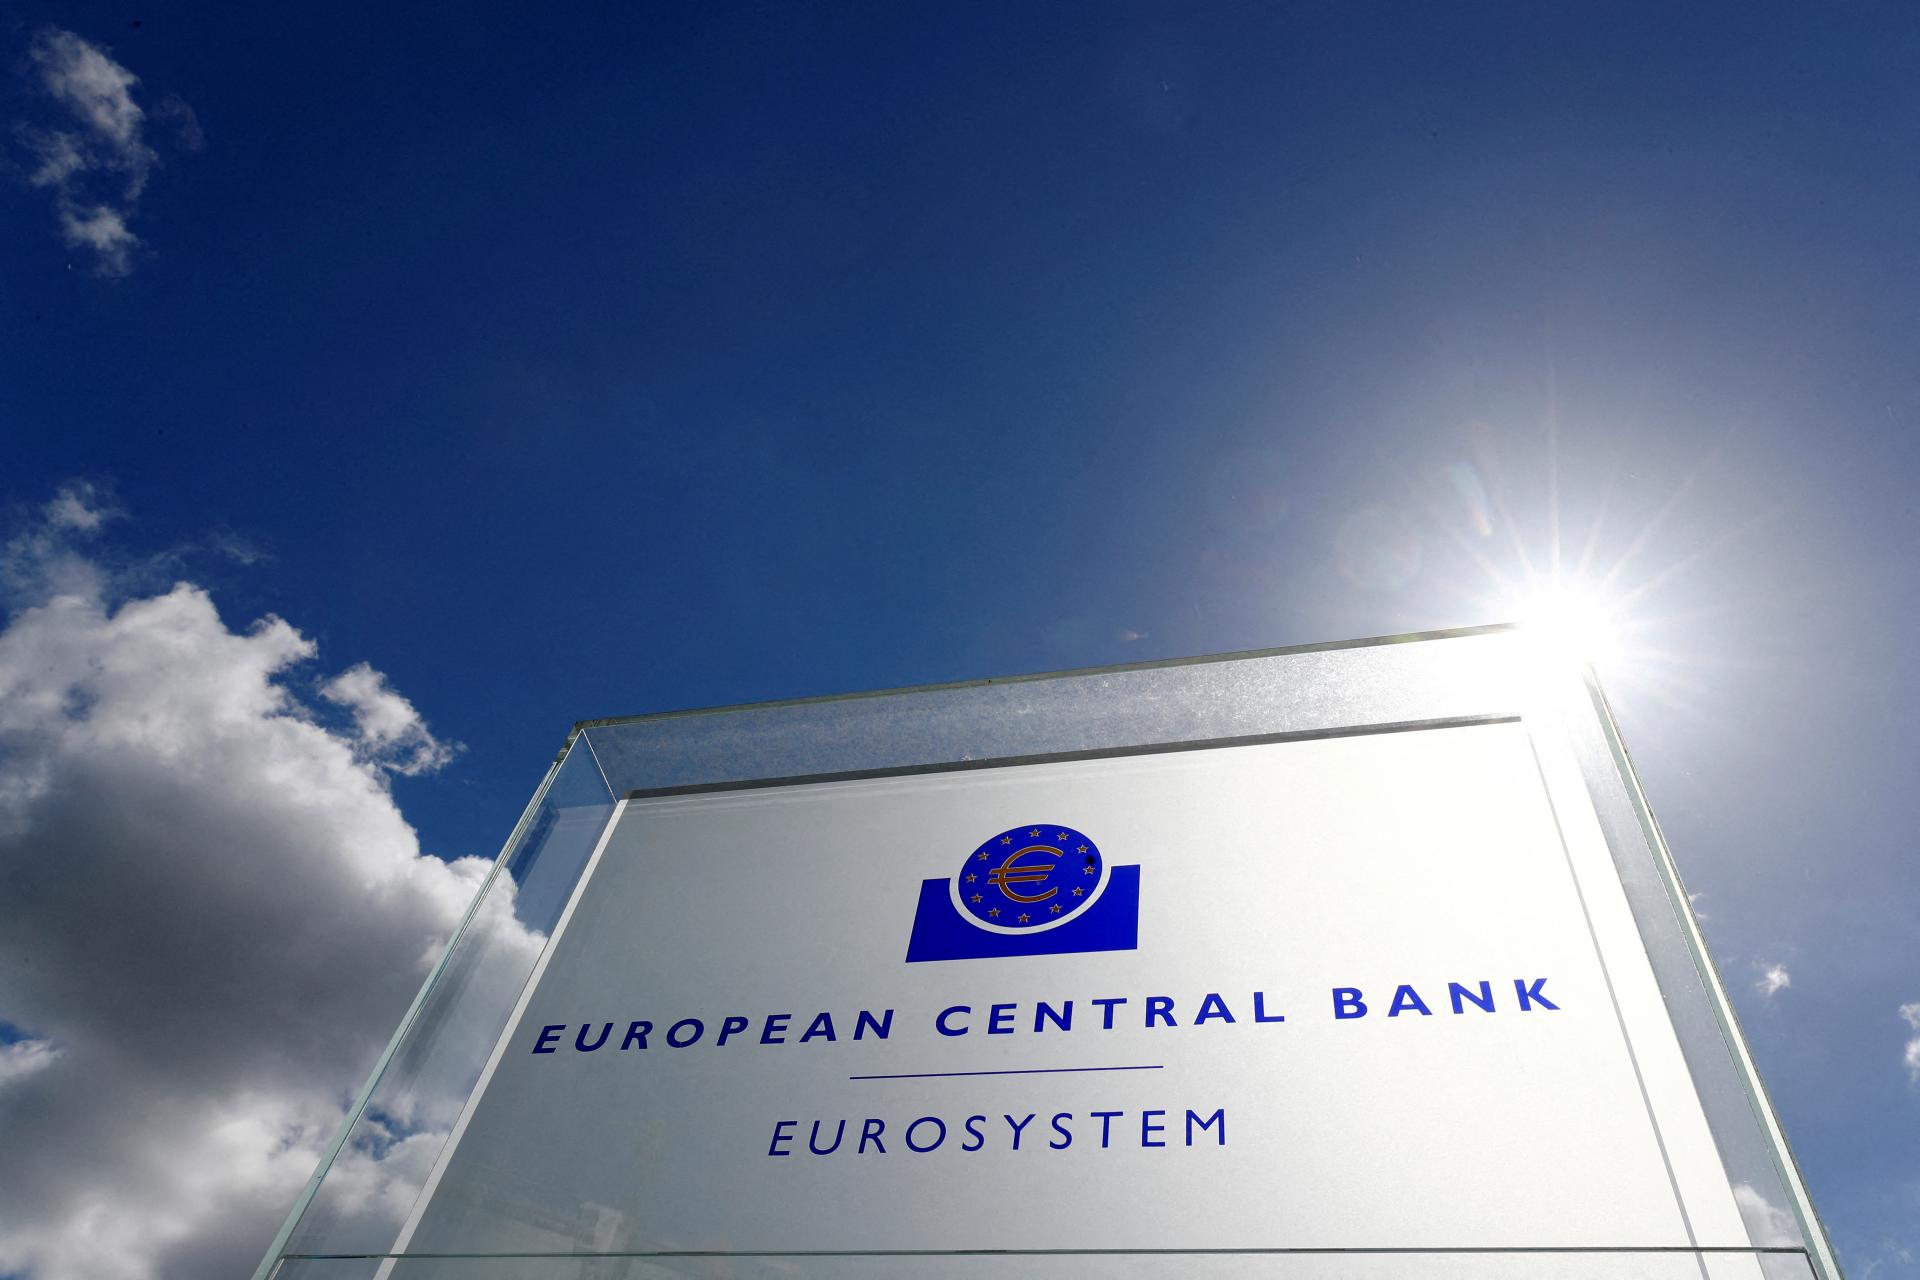 ECB zisťovala expozíciu bánk pod jej dohľadom voči Credit Suisse. Nevidí problémy ako systémové